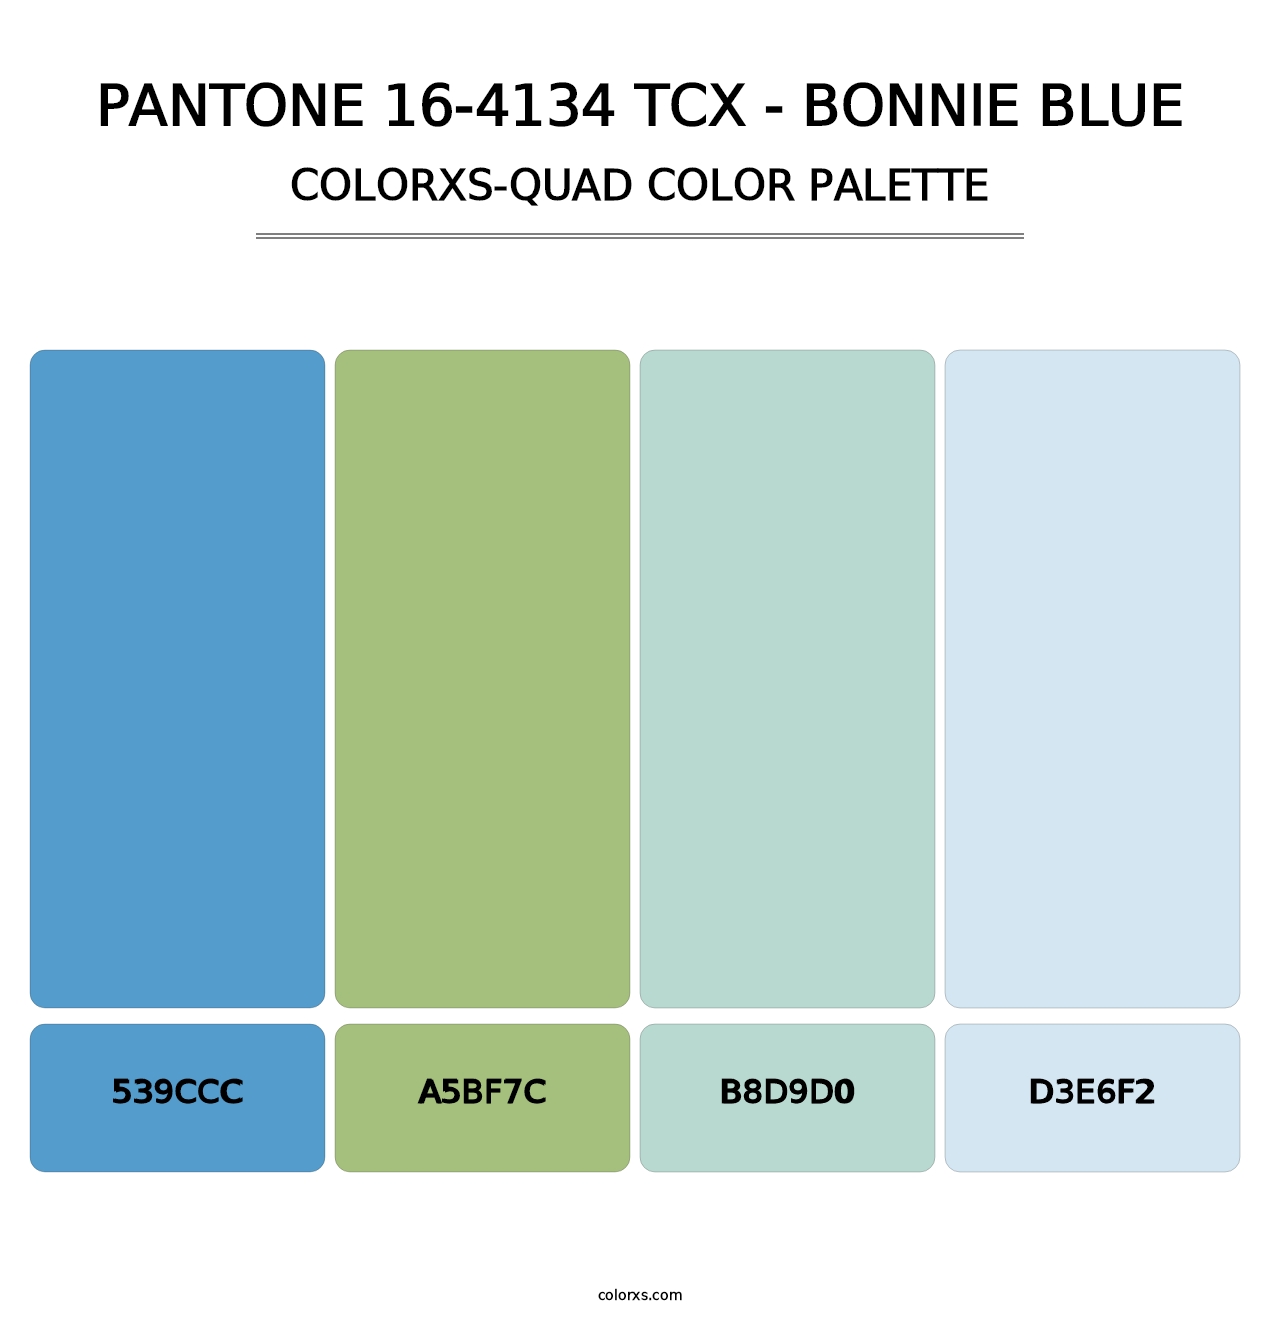 PANTONE 16-4134 TCX - Bonnie Blue - Colorxs Quad Palette